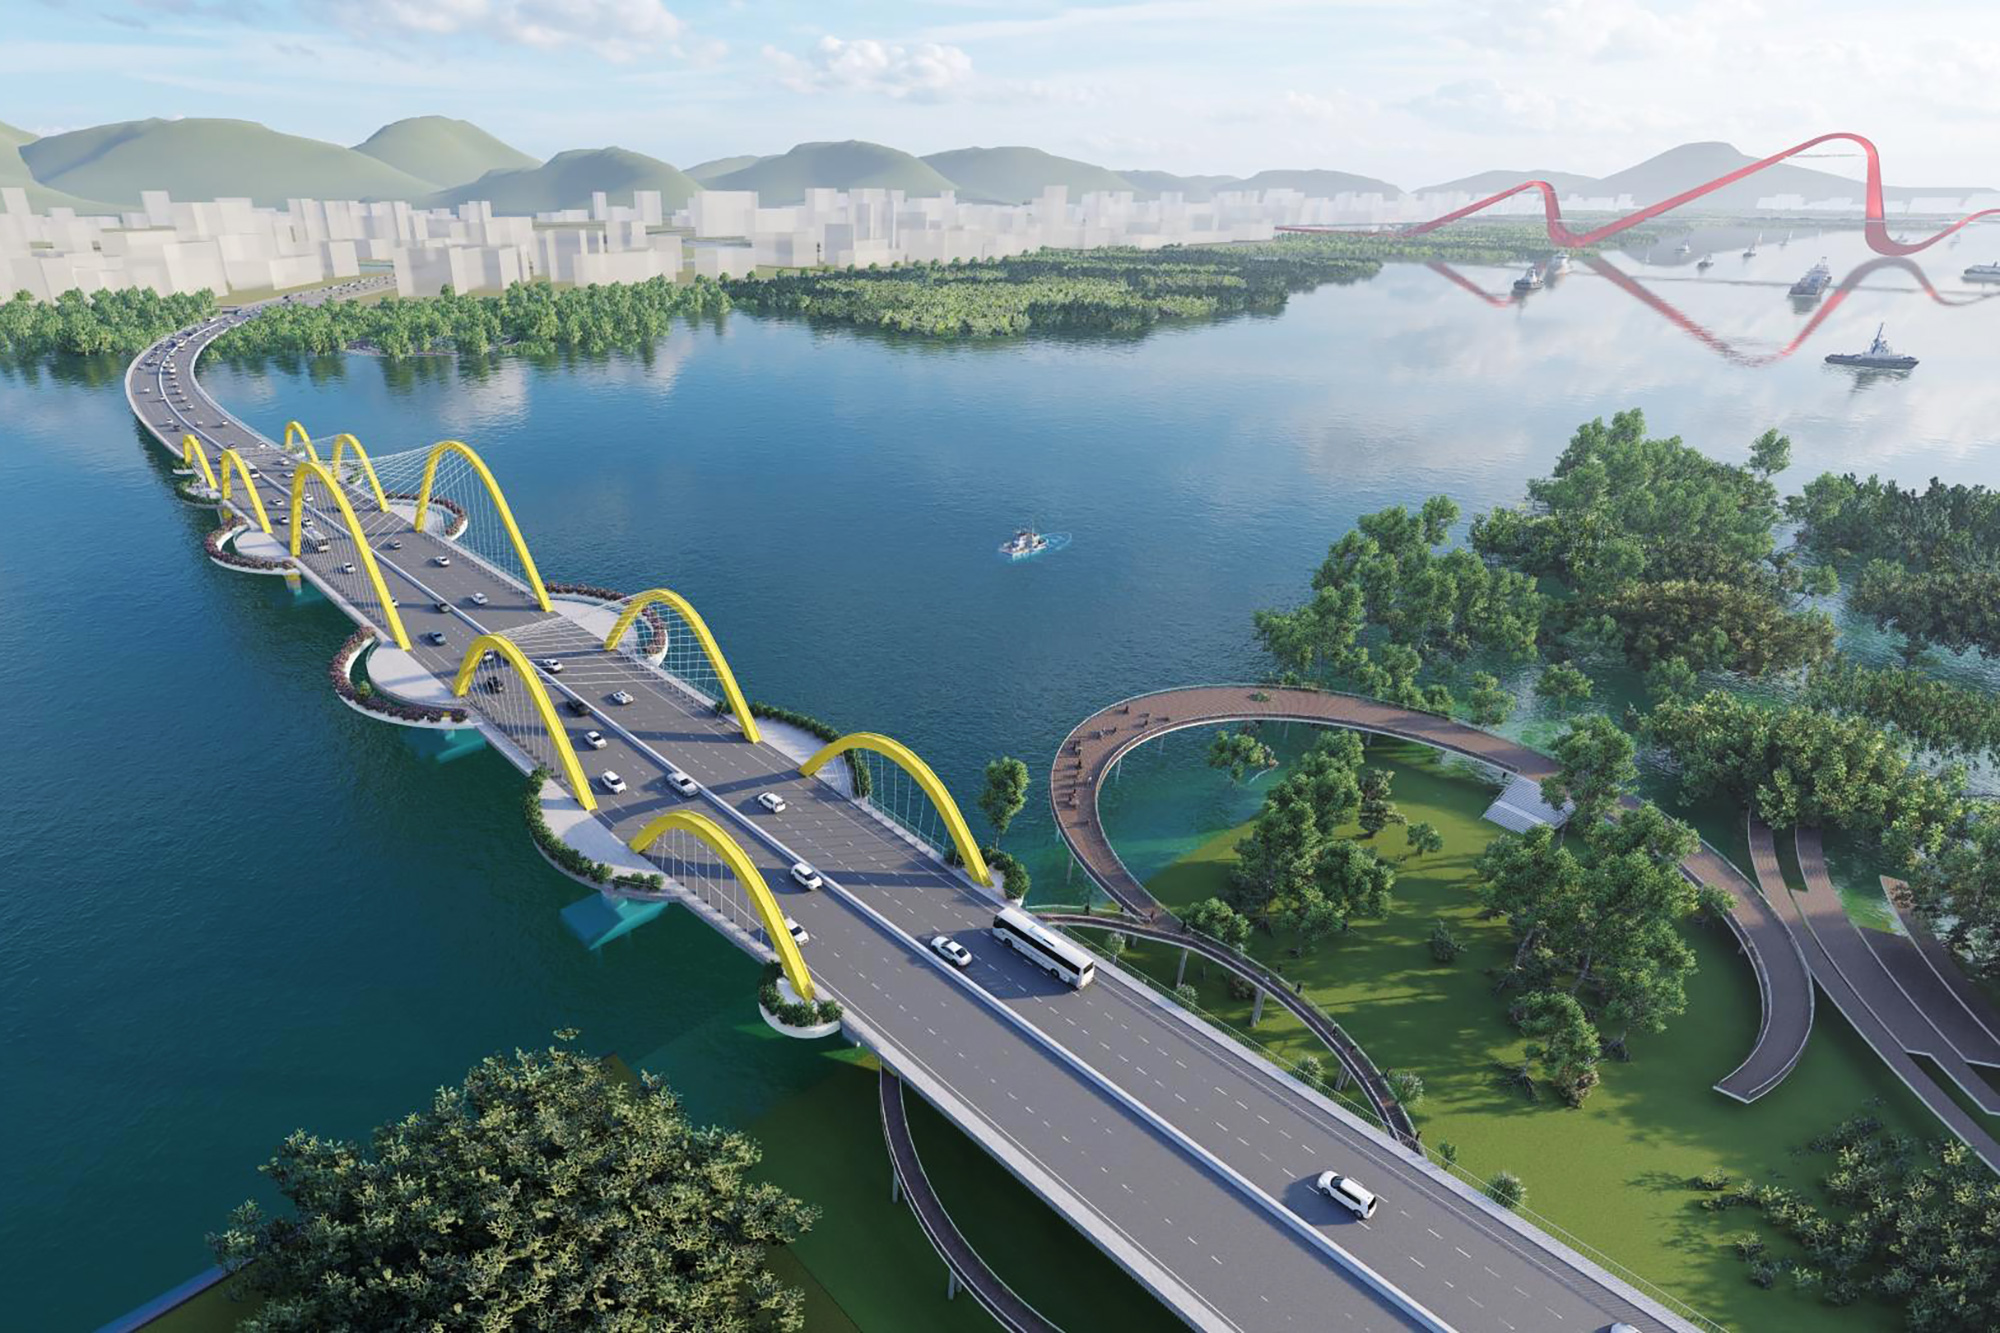 Phối cảnh cầu Cửa Lục 1, cây cầu nối đôi bờ vịnh Cửa Lục sẽ tạo thuận lợi trong kết nối các khu vực của TP Hạ Long.